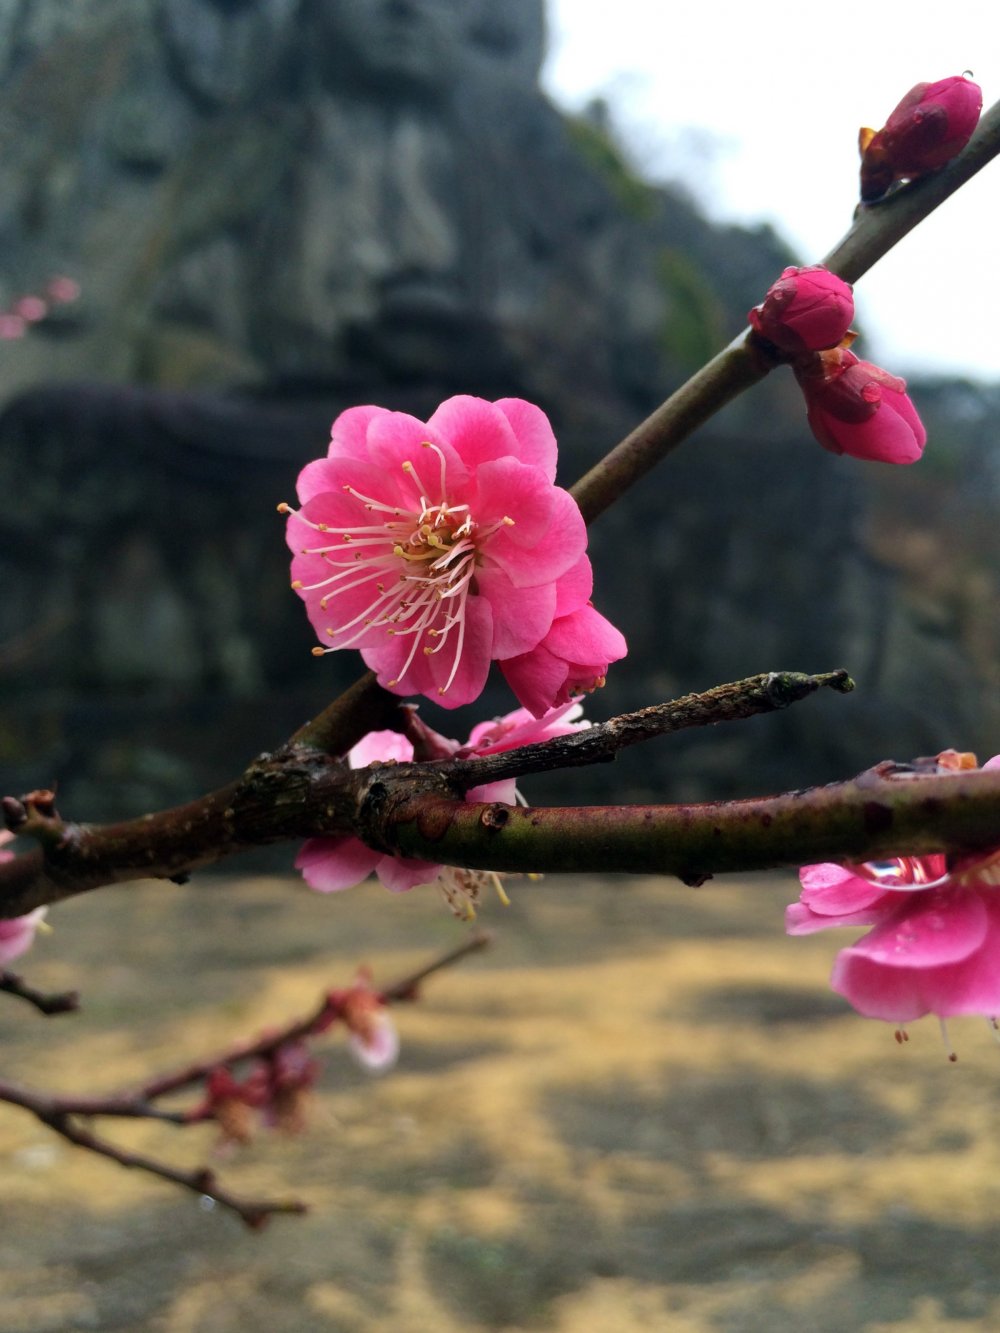 Hoa mơ, Đức Phật, Chiba và du lịch Nhật Bản. Hãy cùng khám phá những địa điểm tuyệt đẹp trong chuyến du lịch Nhật Bản của bạn. Khám phá những cánh đồng hoa mơ tuyệt đẹp và tìm hiểu về lịch sử và văn hóa độc đáo của Nhật Bản tại Chiba. Hãy khai phá những điều thú vị này và tạo ra những kỷ niệm đẹp trong chuyến du lịch của bạn.